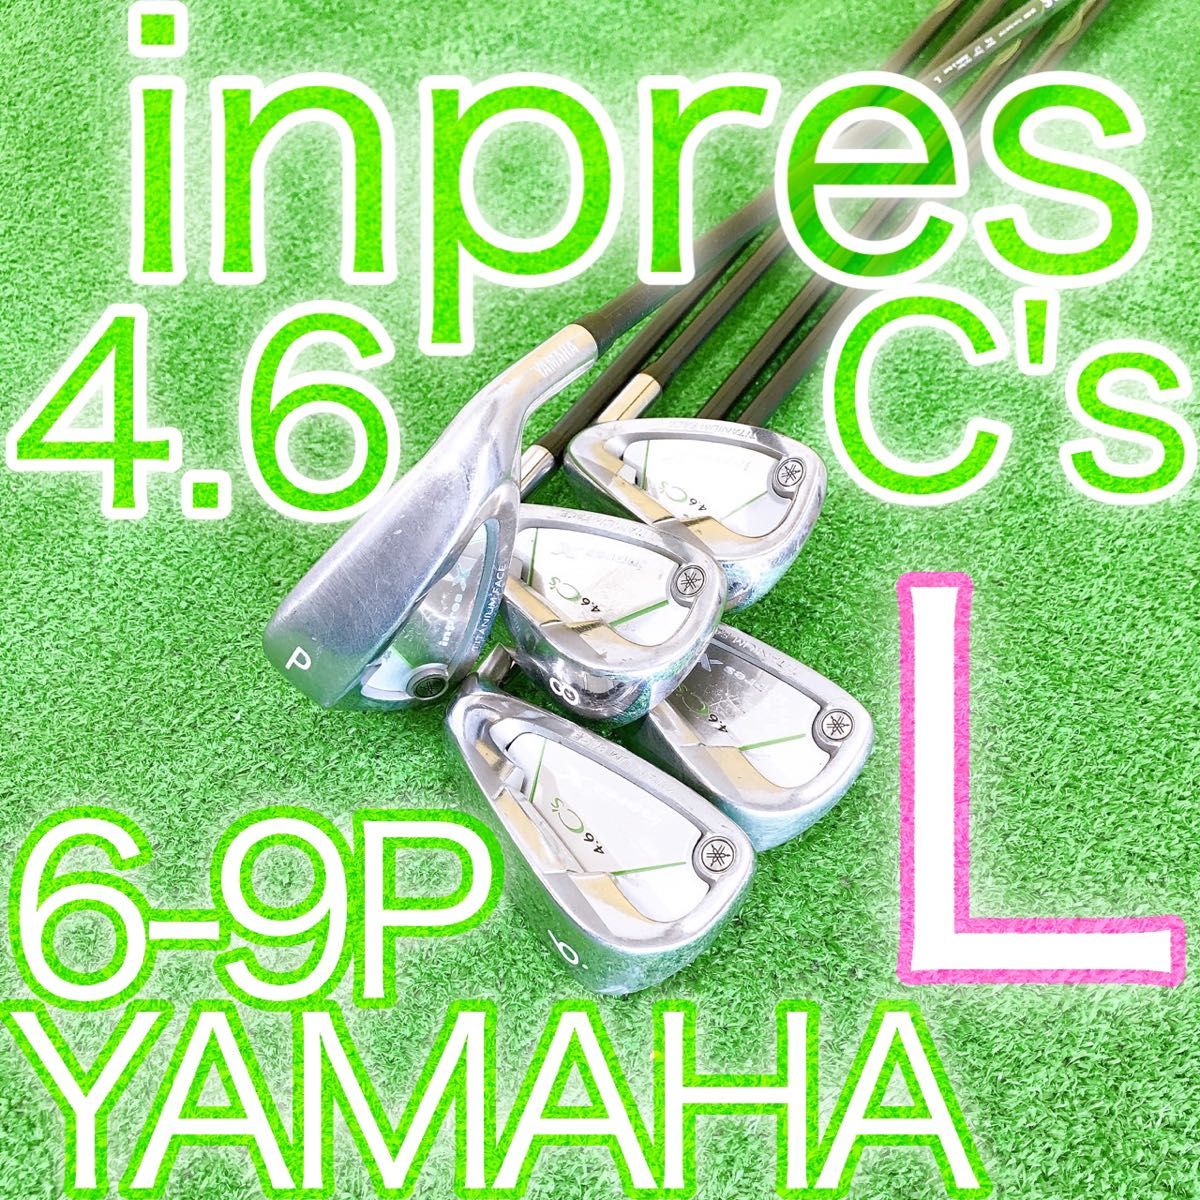 キ38★inpres X 4.6C’s インプレス 5本アイアンセット エックス レディース L JAPAN ヤマハ YAMAHA